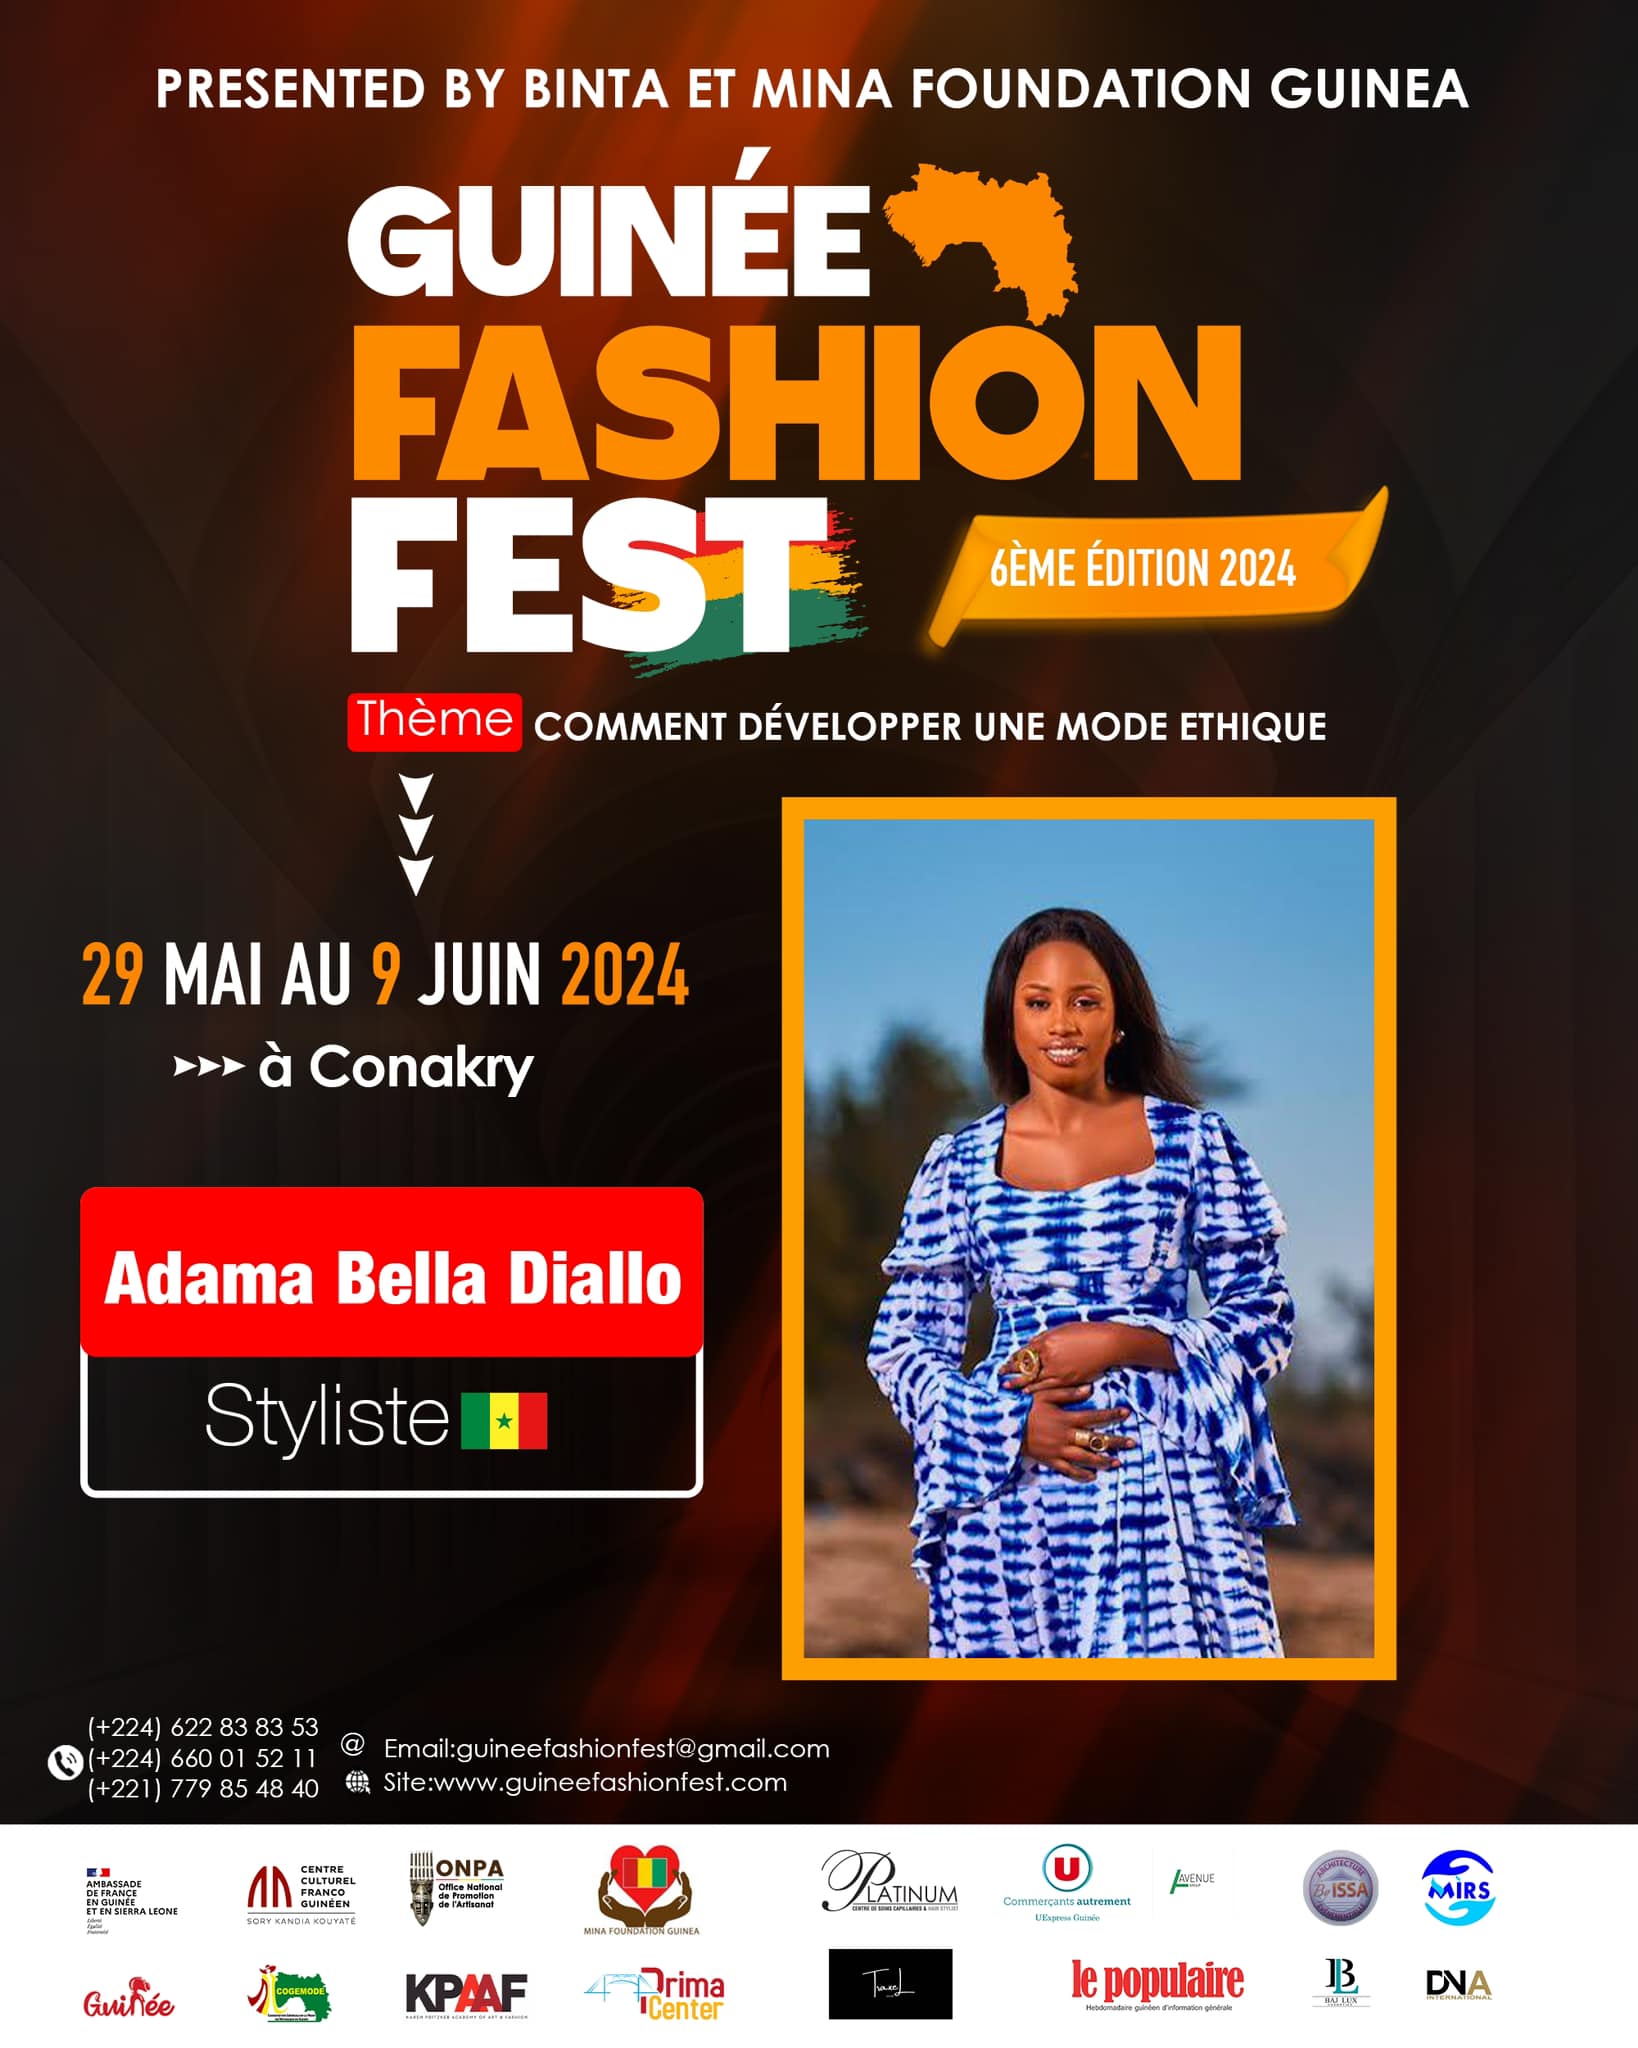 Guinée Fashion Fest presents Adama Bella Diallo